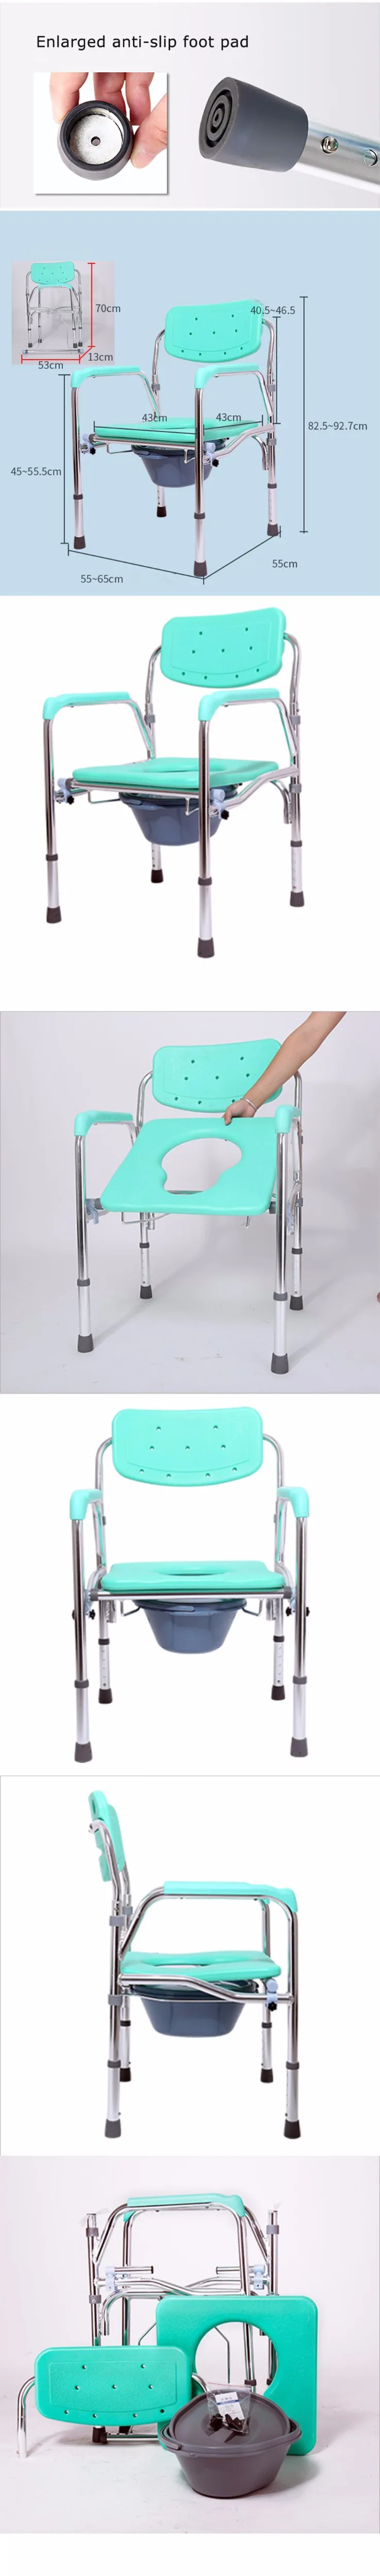 Облегченное компактное туалетное кресло, медицинское регулируемое прикроватное кресло для пожилых людей и инвалидов